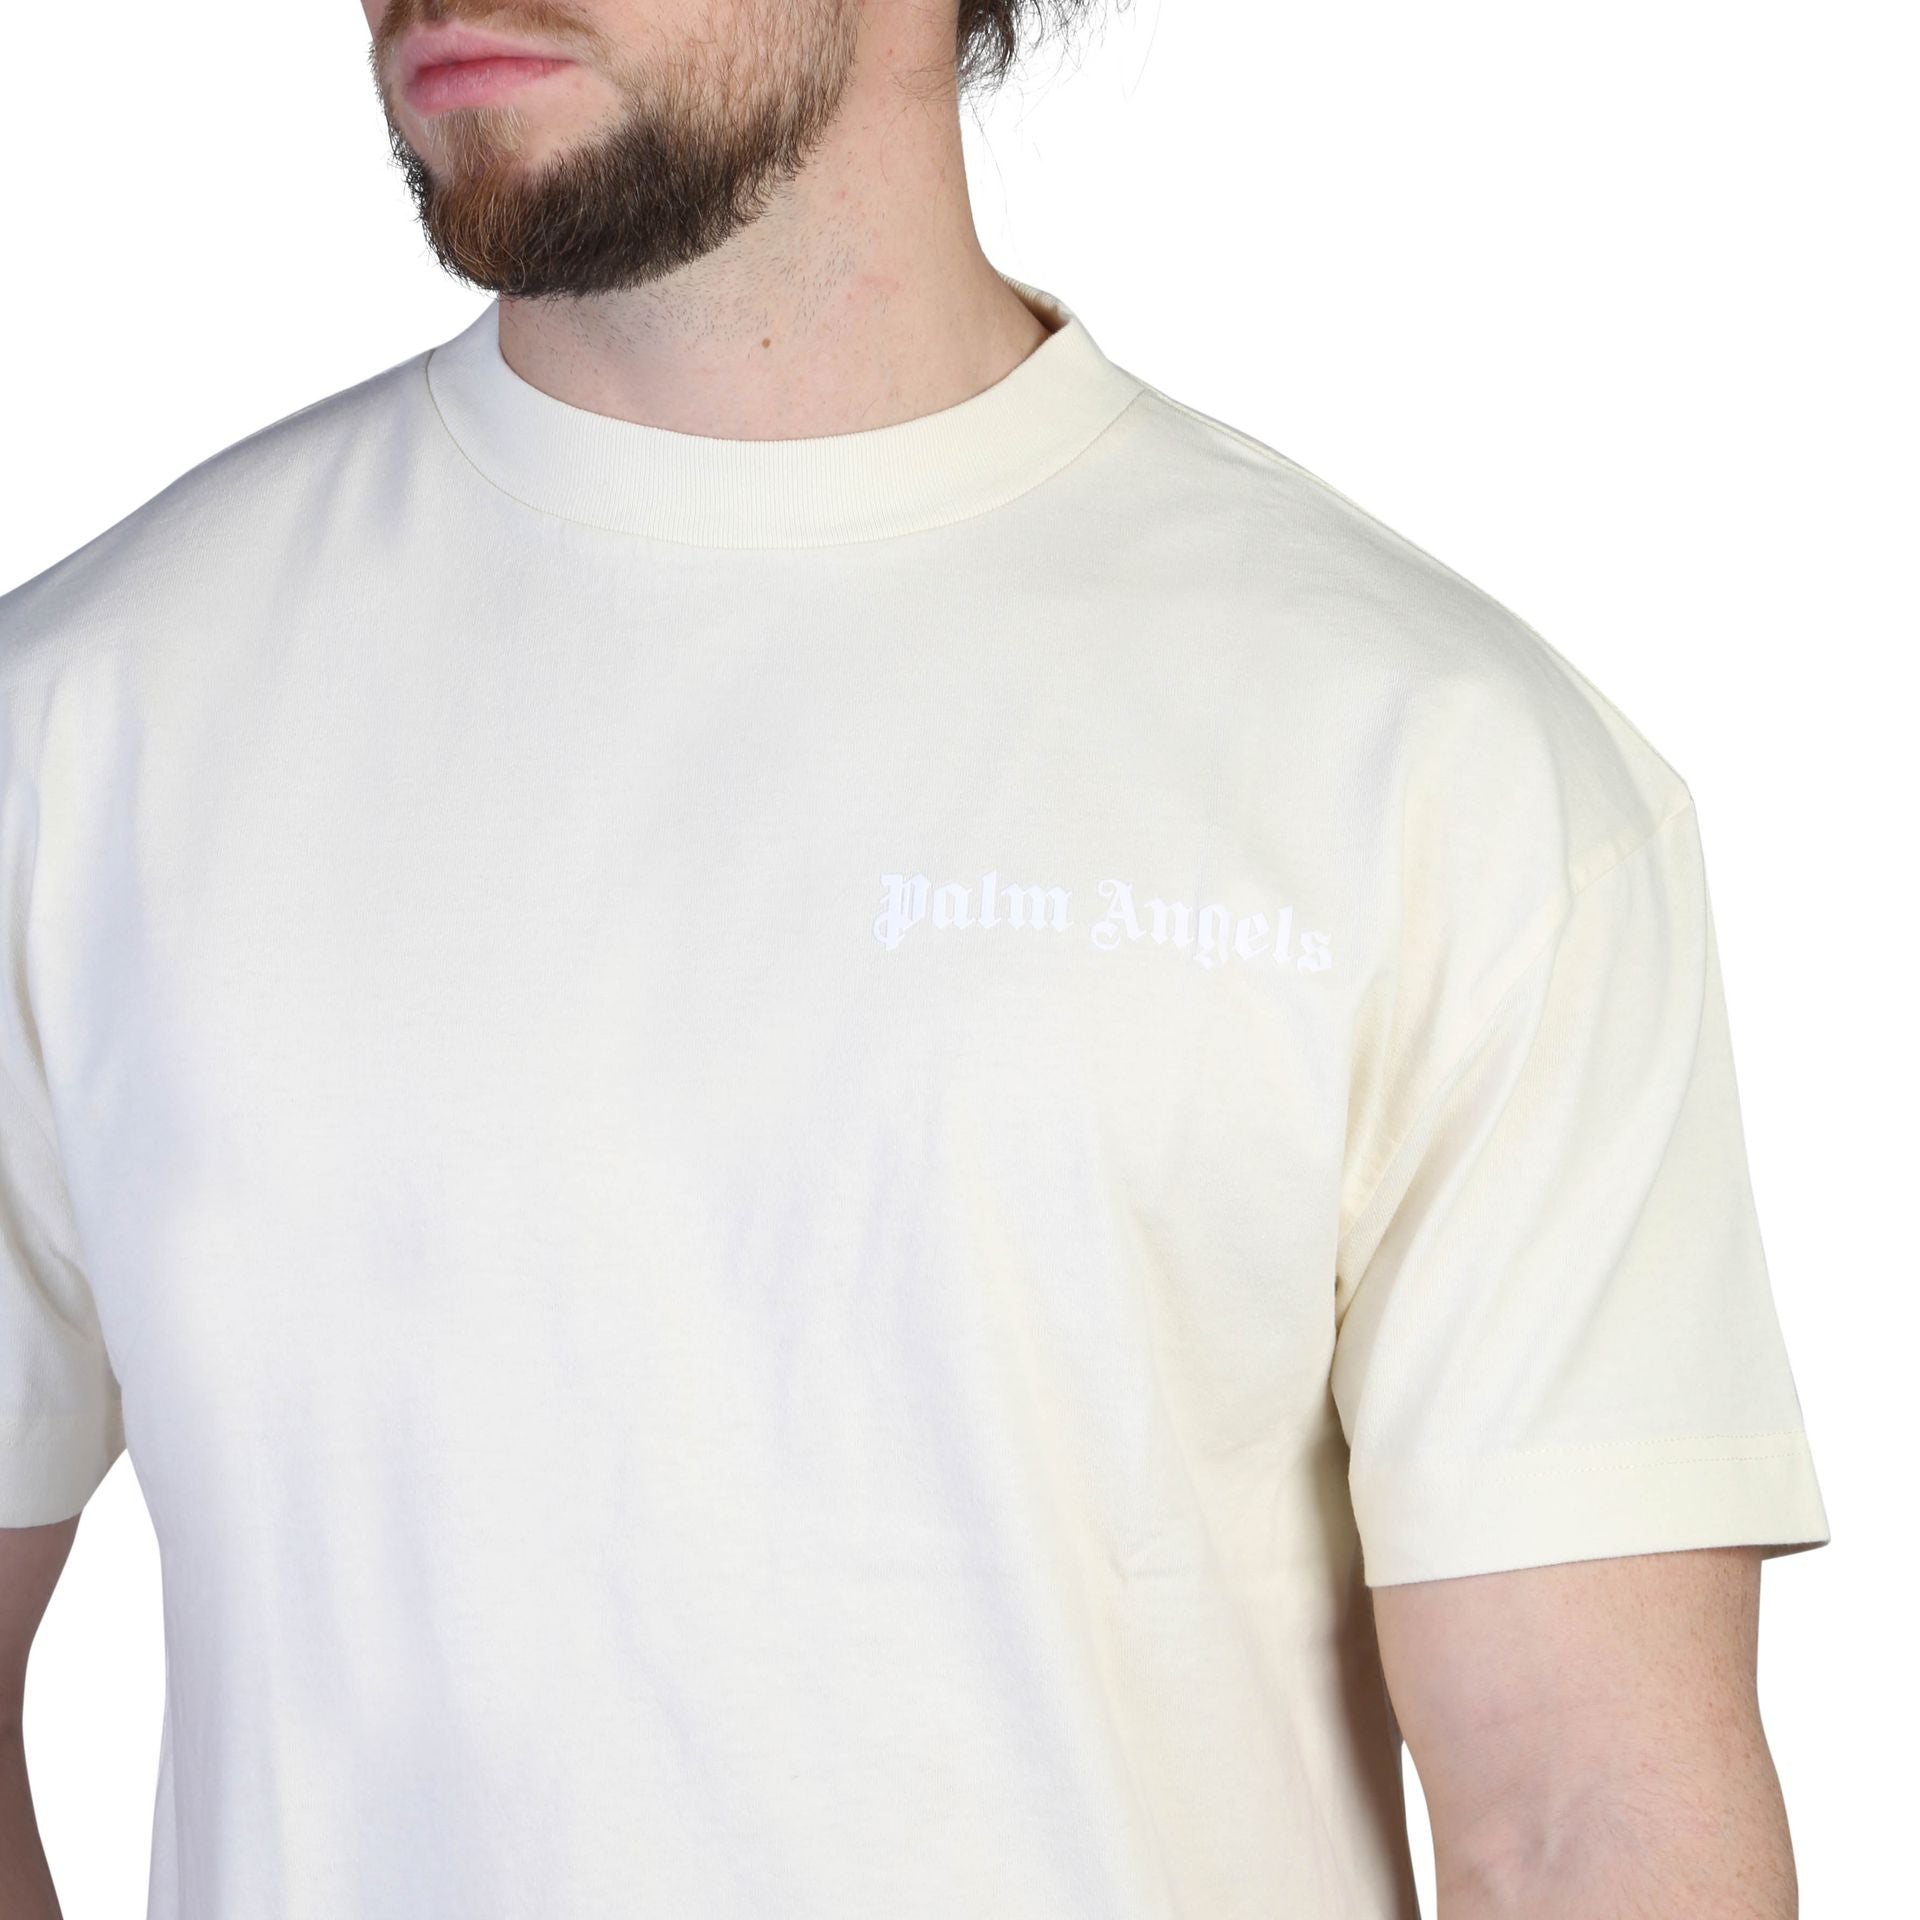 Palm Angels T-shirt